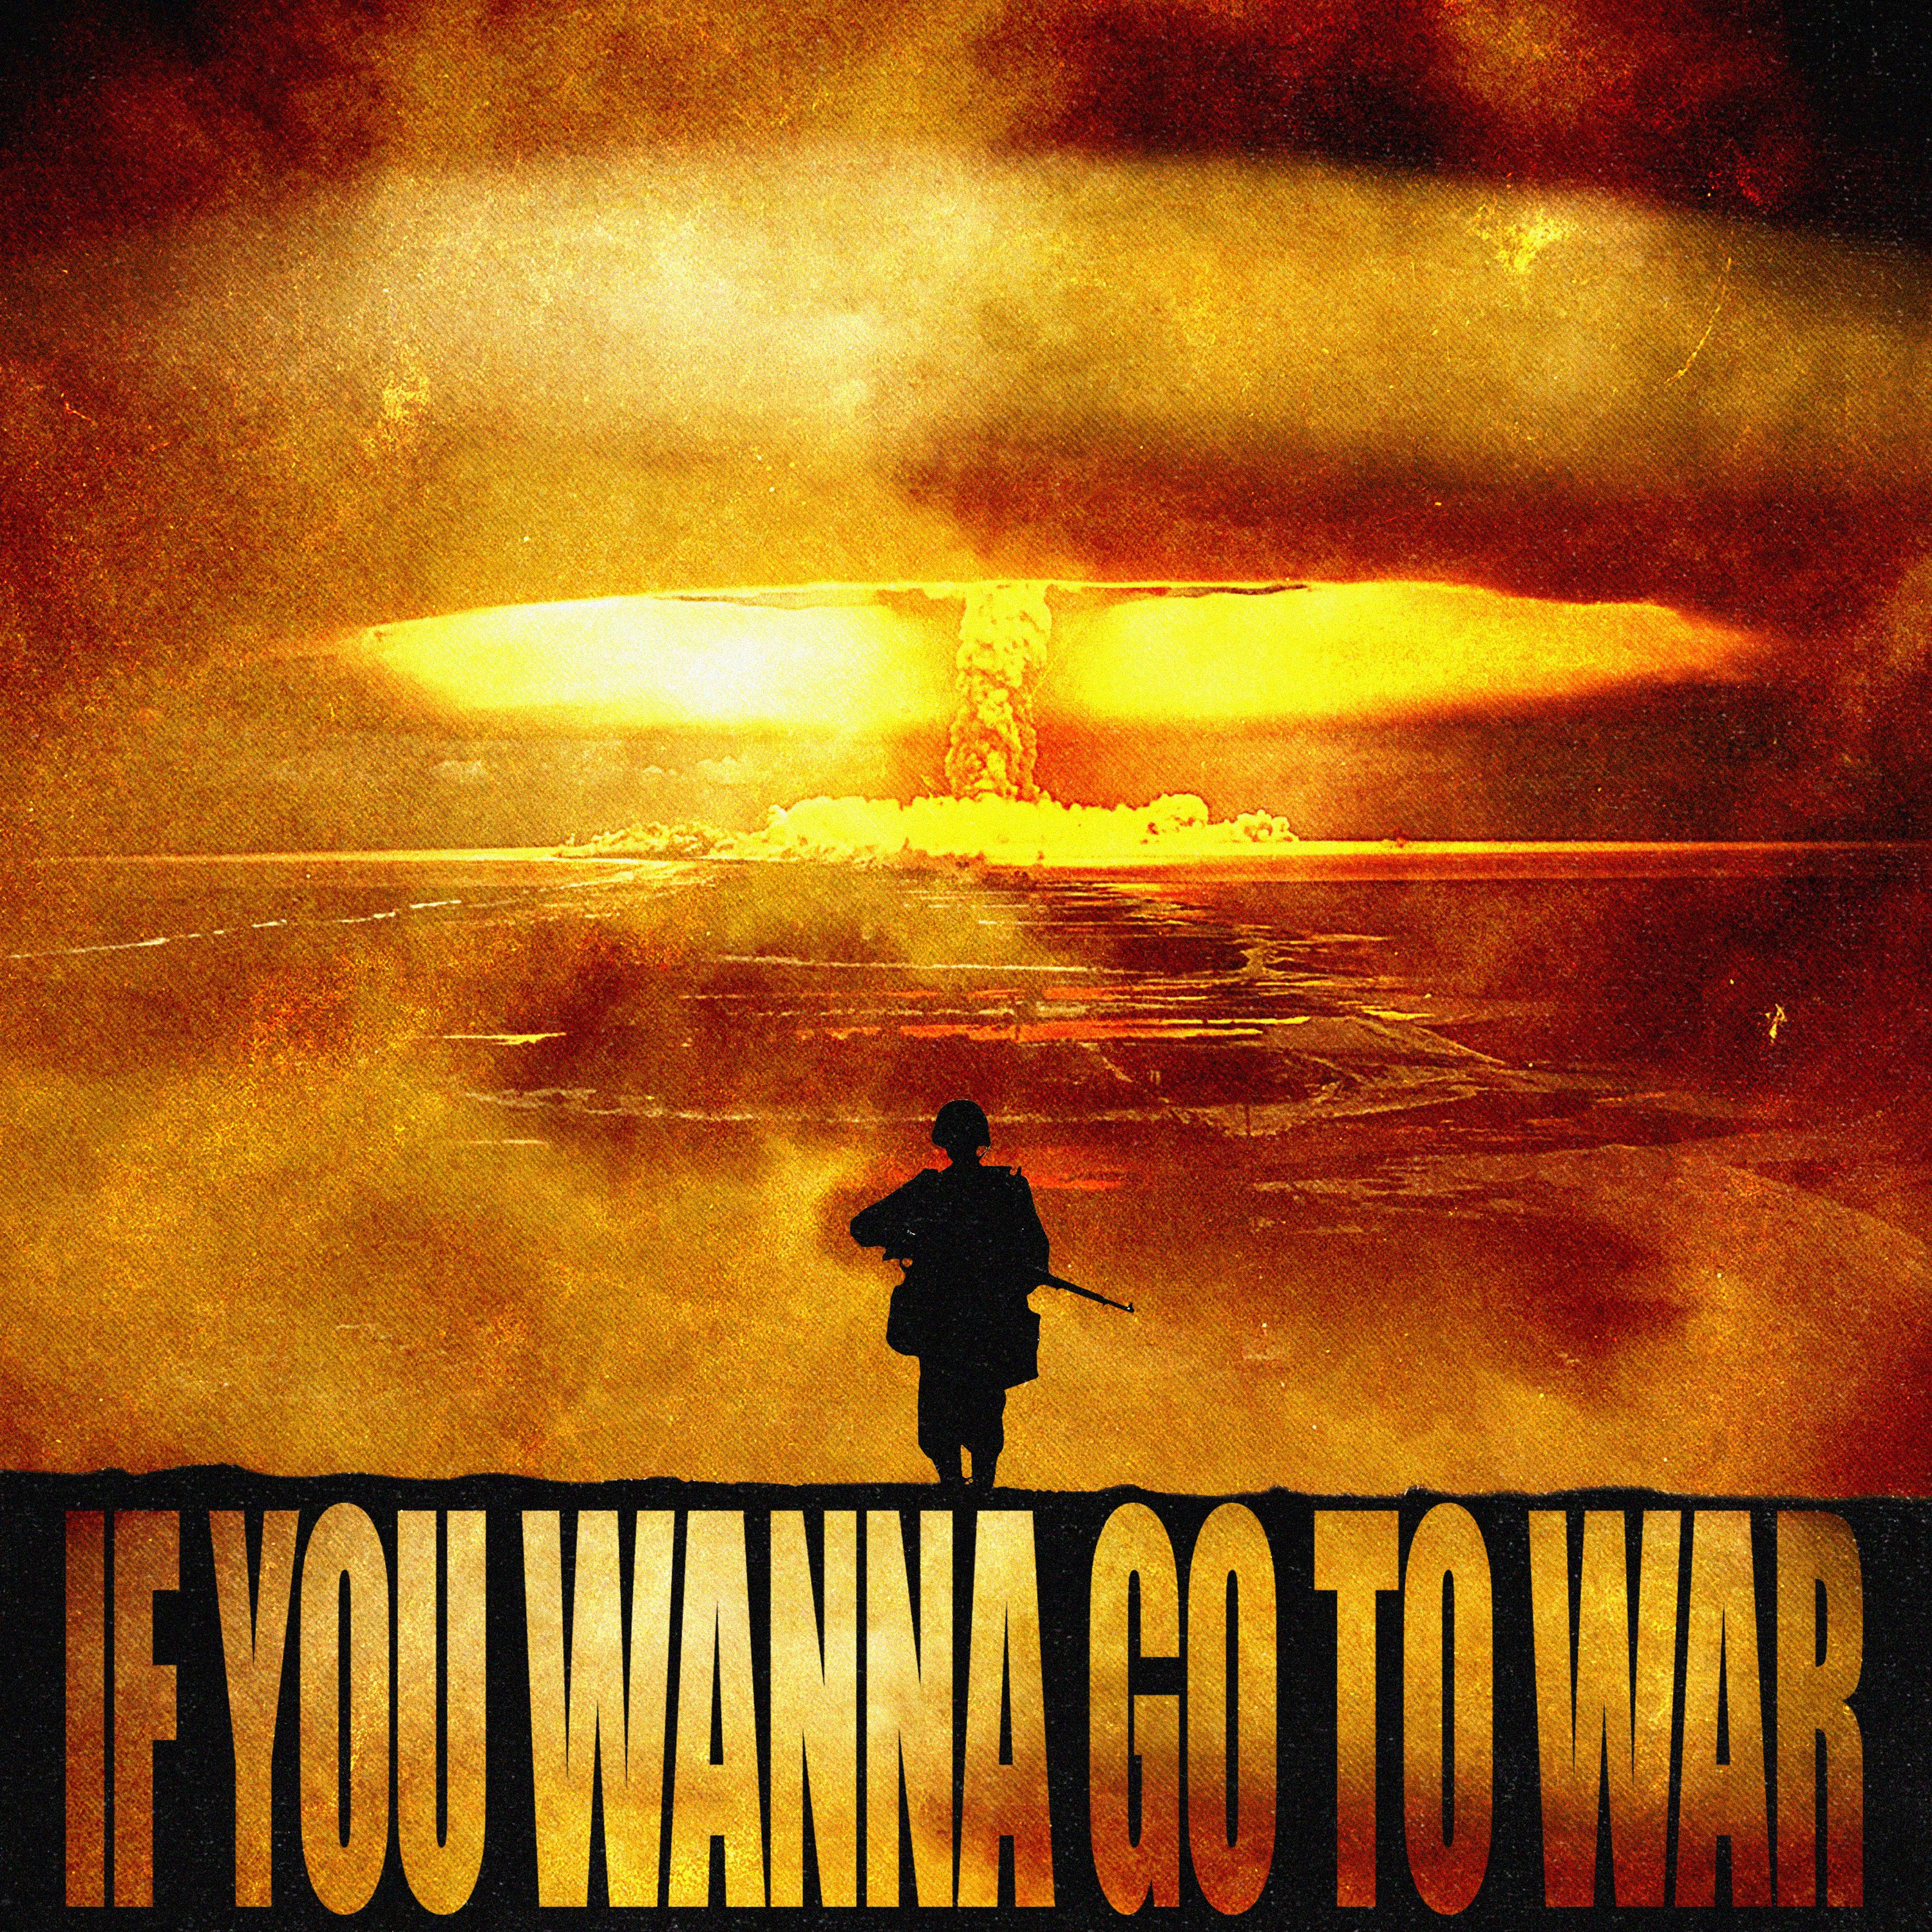 ഡൗൺലോഡ് IF U WANNA GO TO WAR